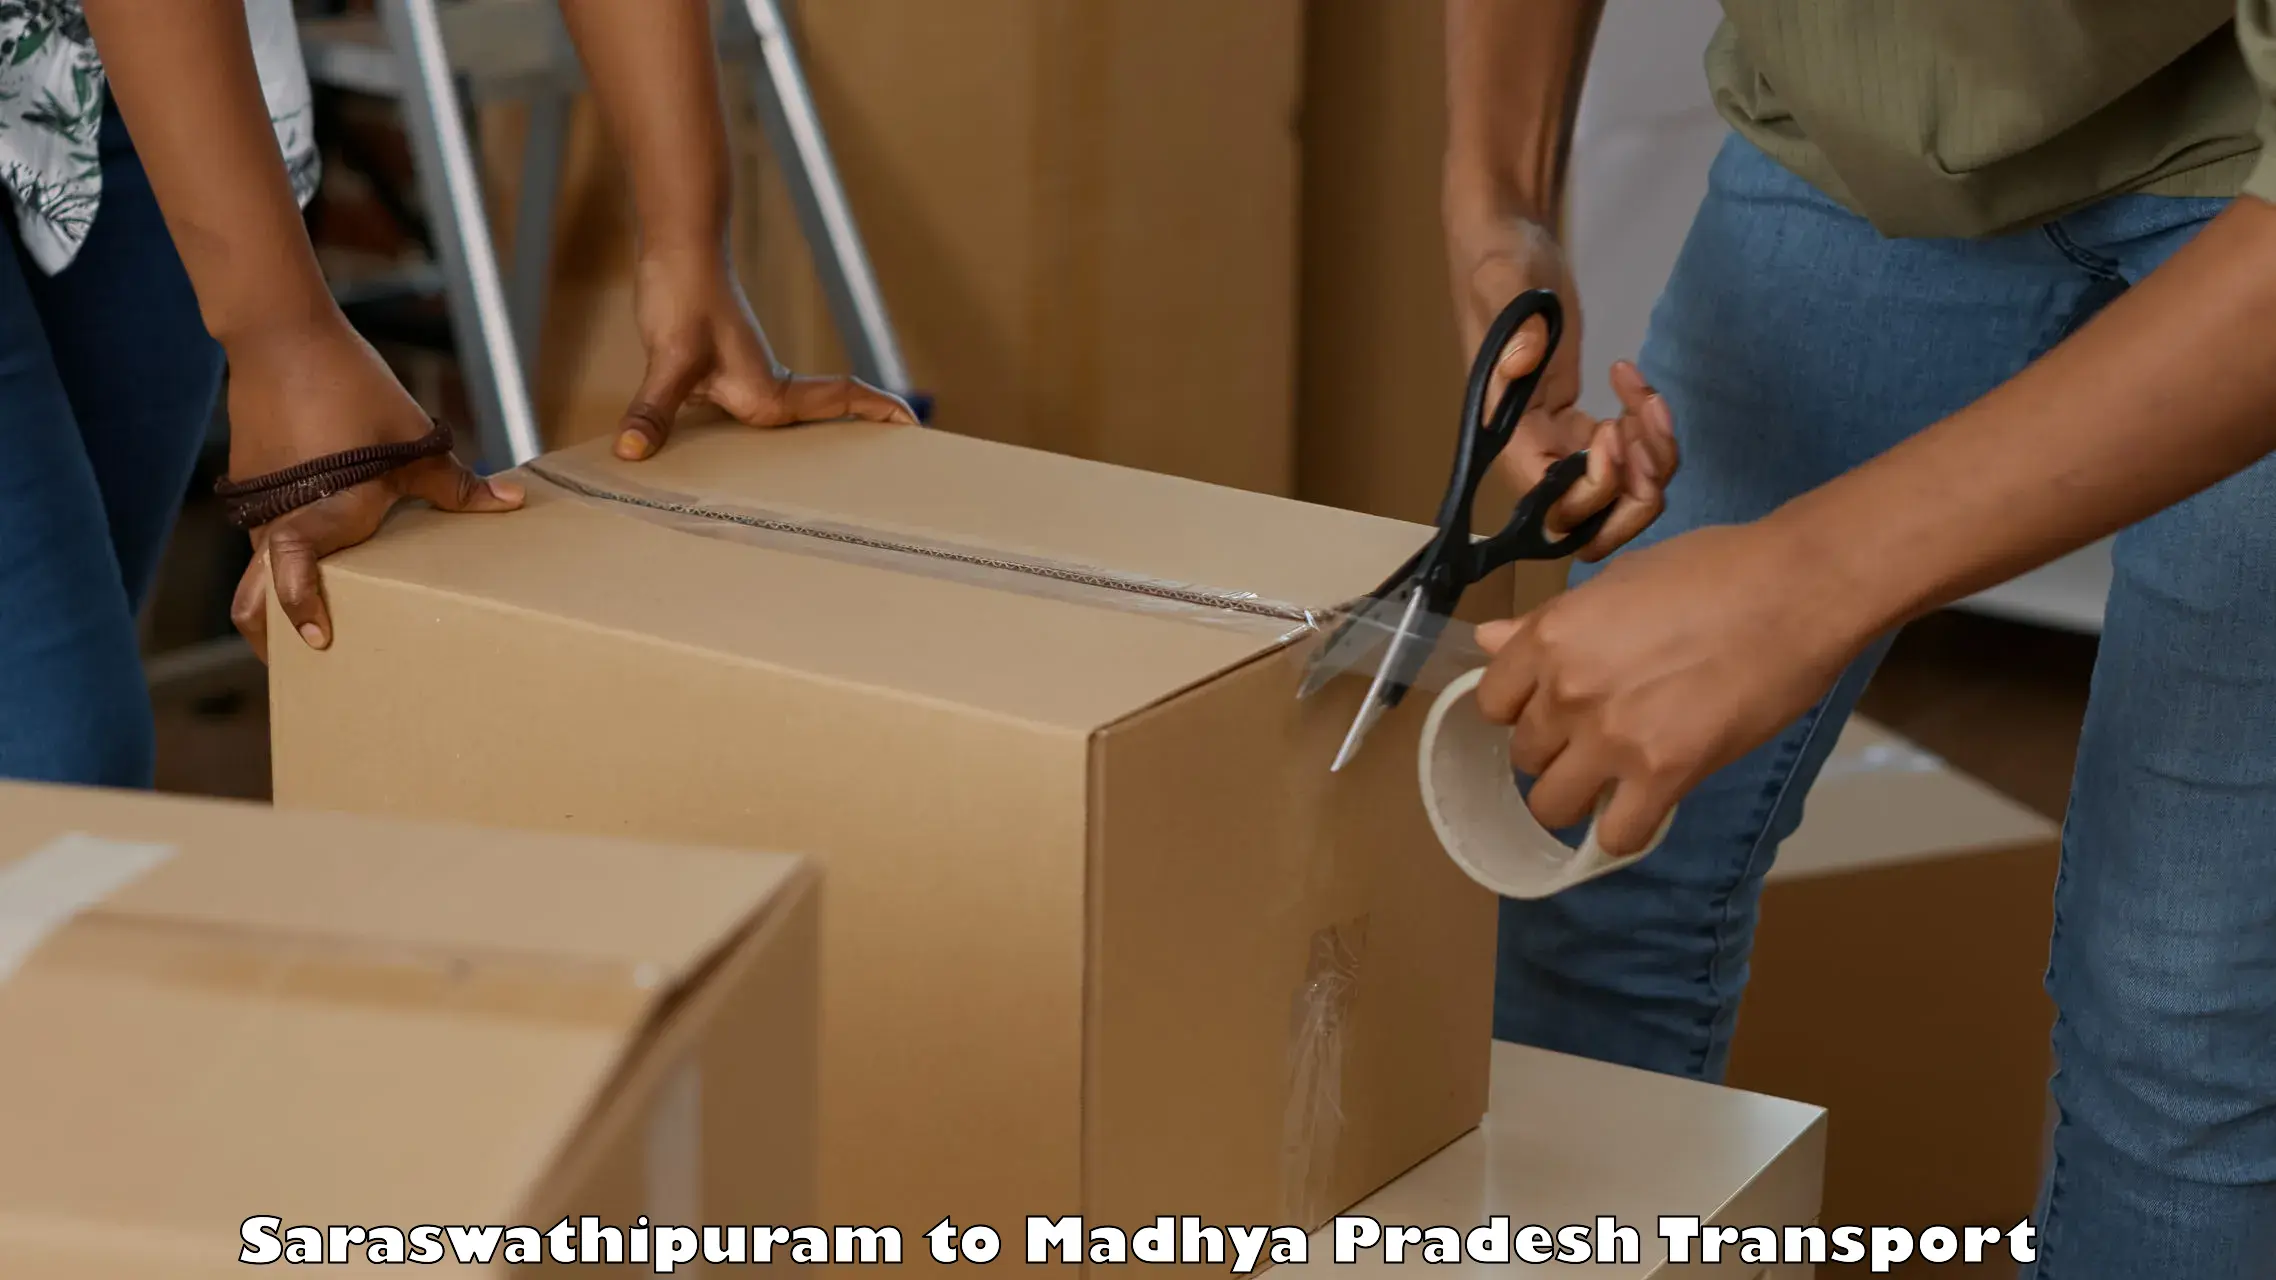 Shipping partner Saraswathipuram to Deosar